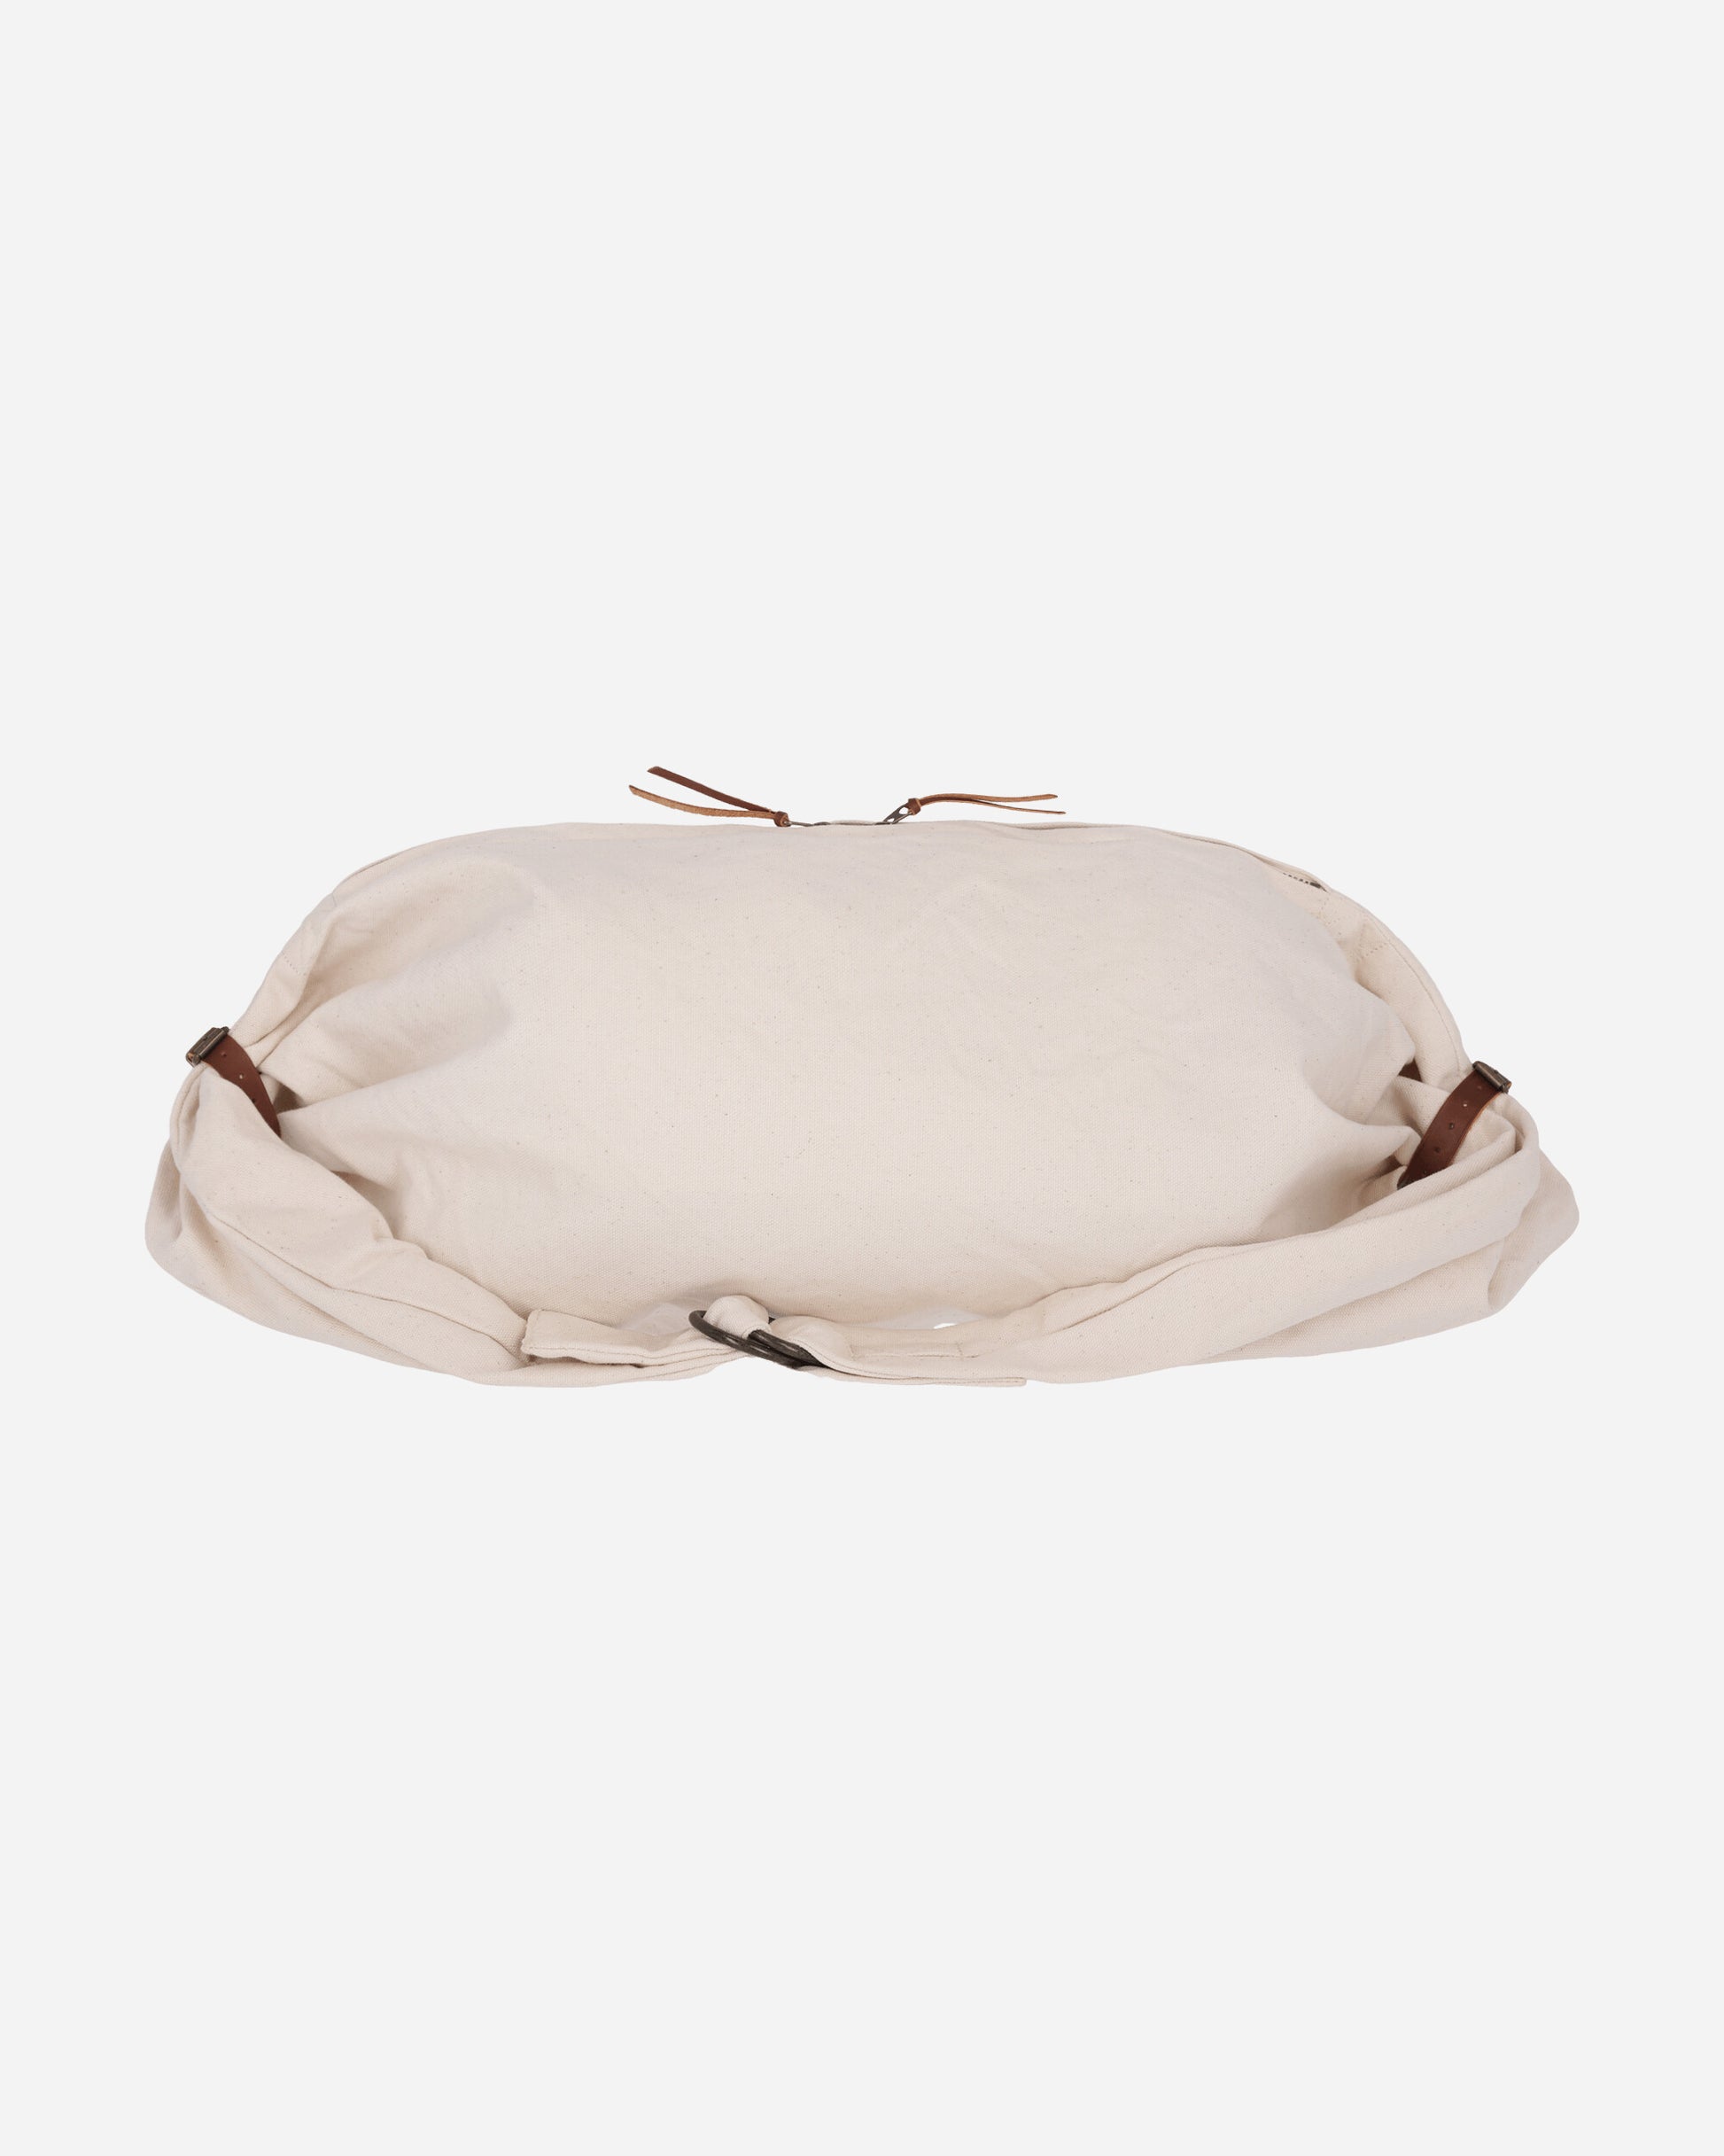 KAPITAL #8 Canvas Snufkin Bag('Em Kountry) Ecru Bags and Backpacks Shoulder Bags K2309XB507 1